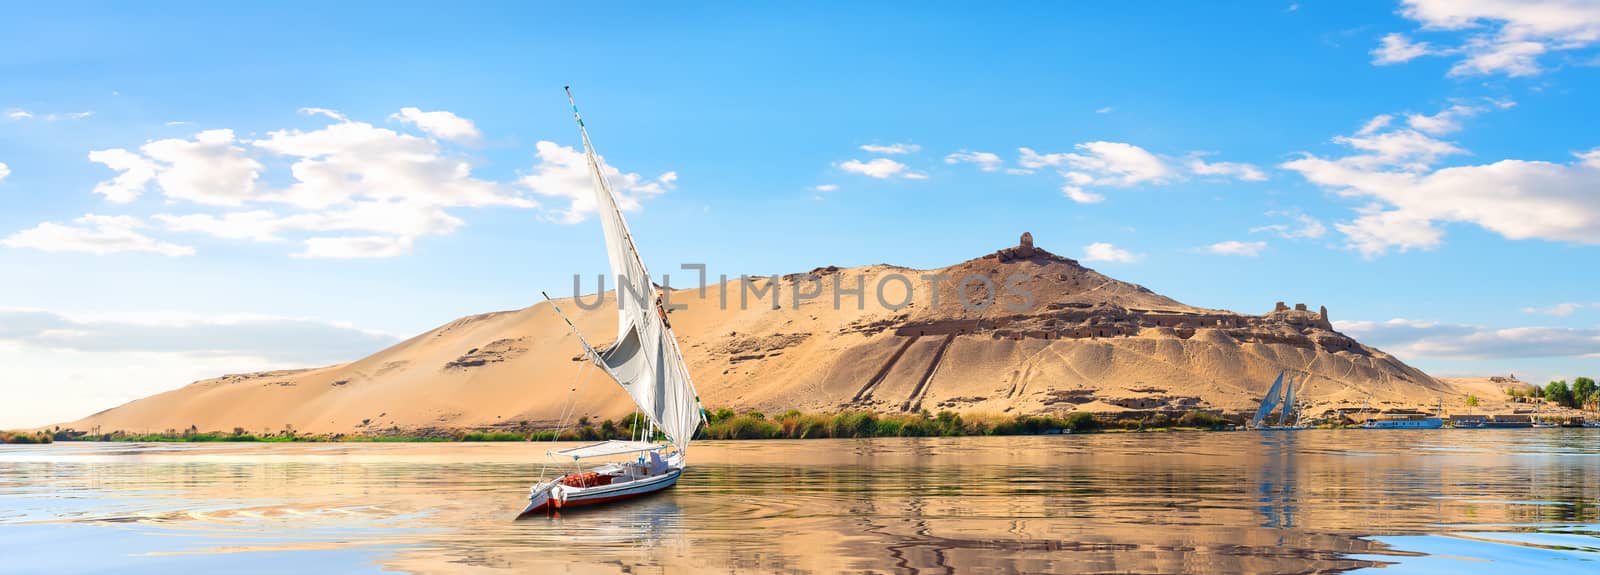 Sailboats in Aswan by Givaga